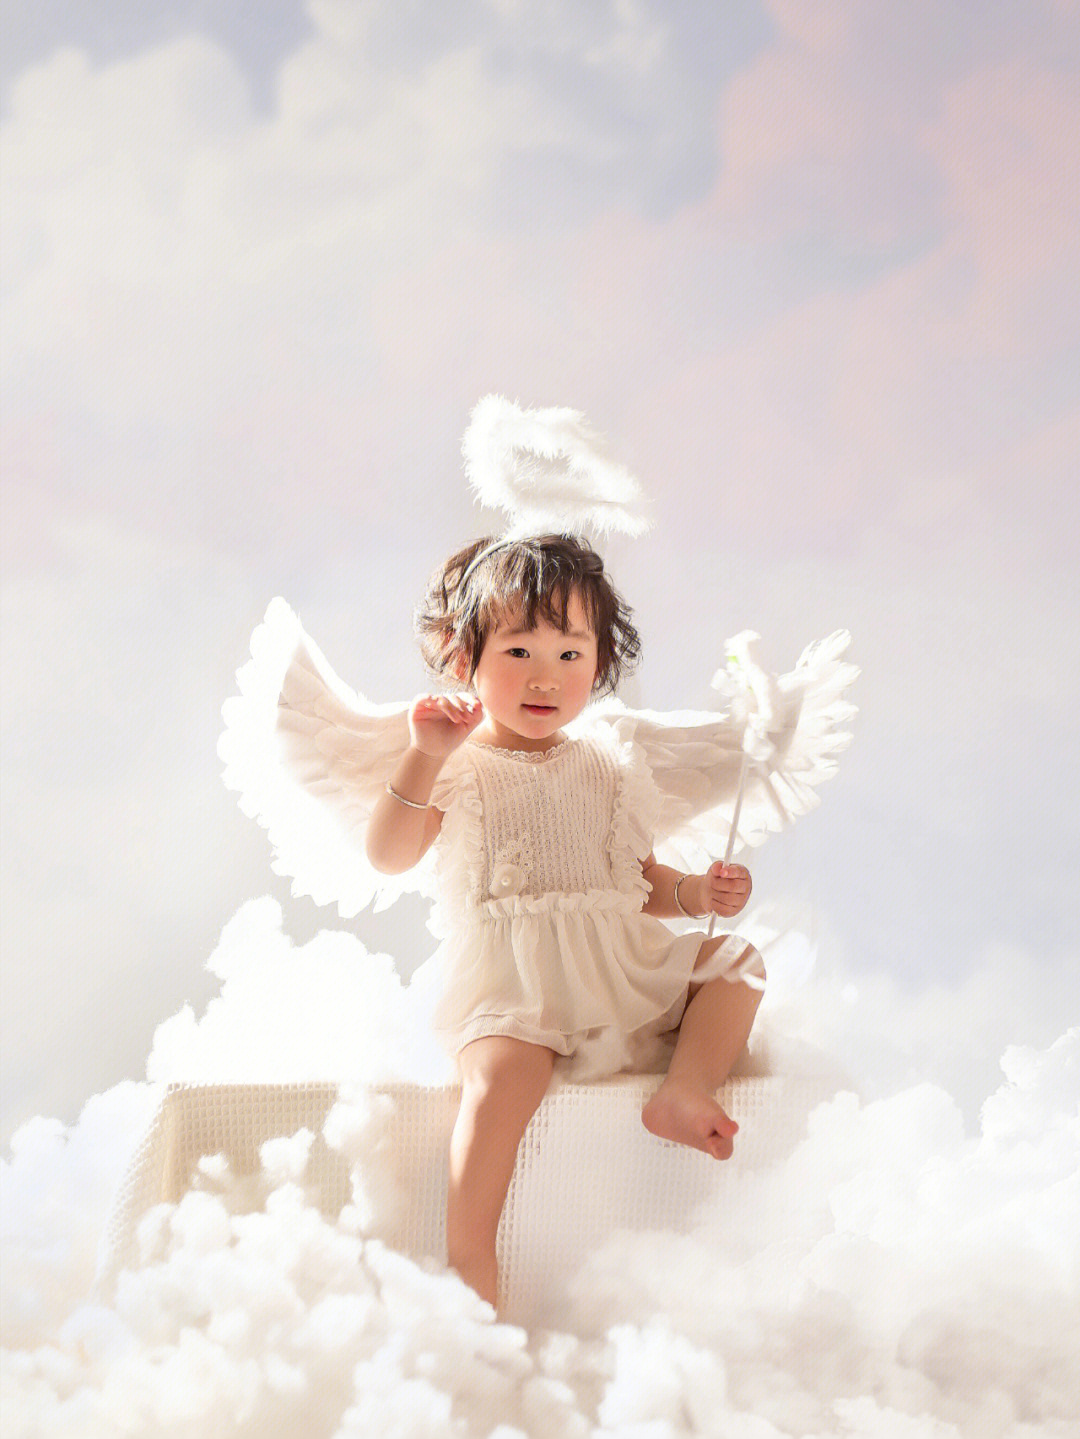 天使宝贝儿童摄影电话图片